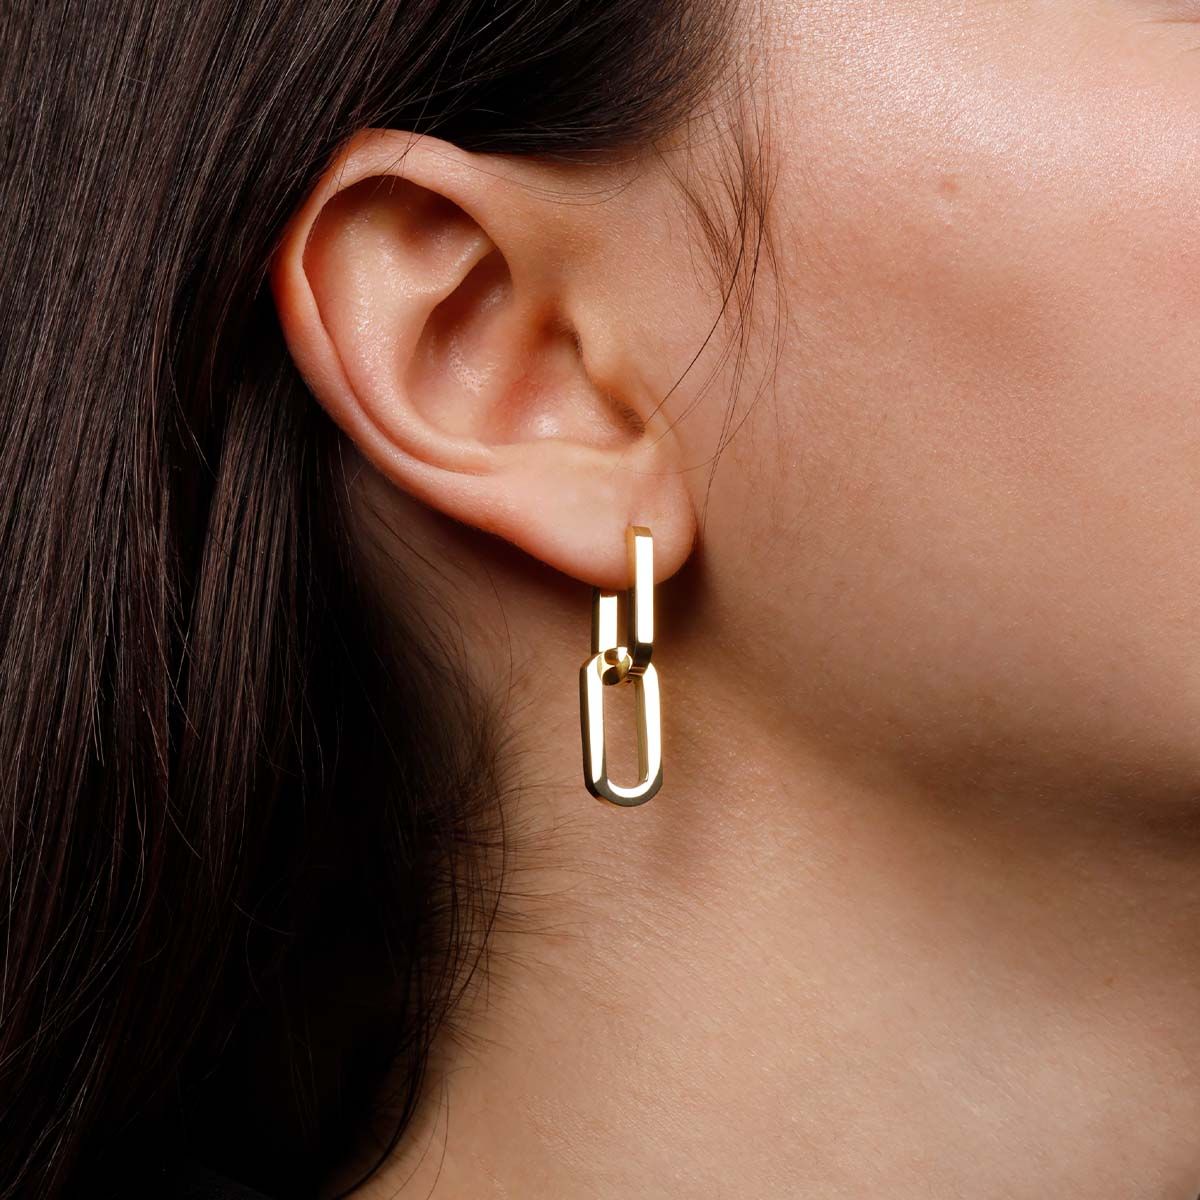 Dual Hoops Earrings - Gold J585